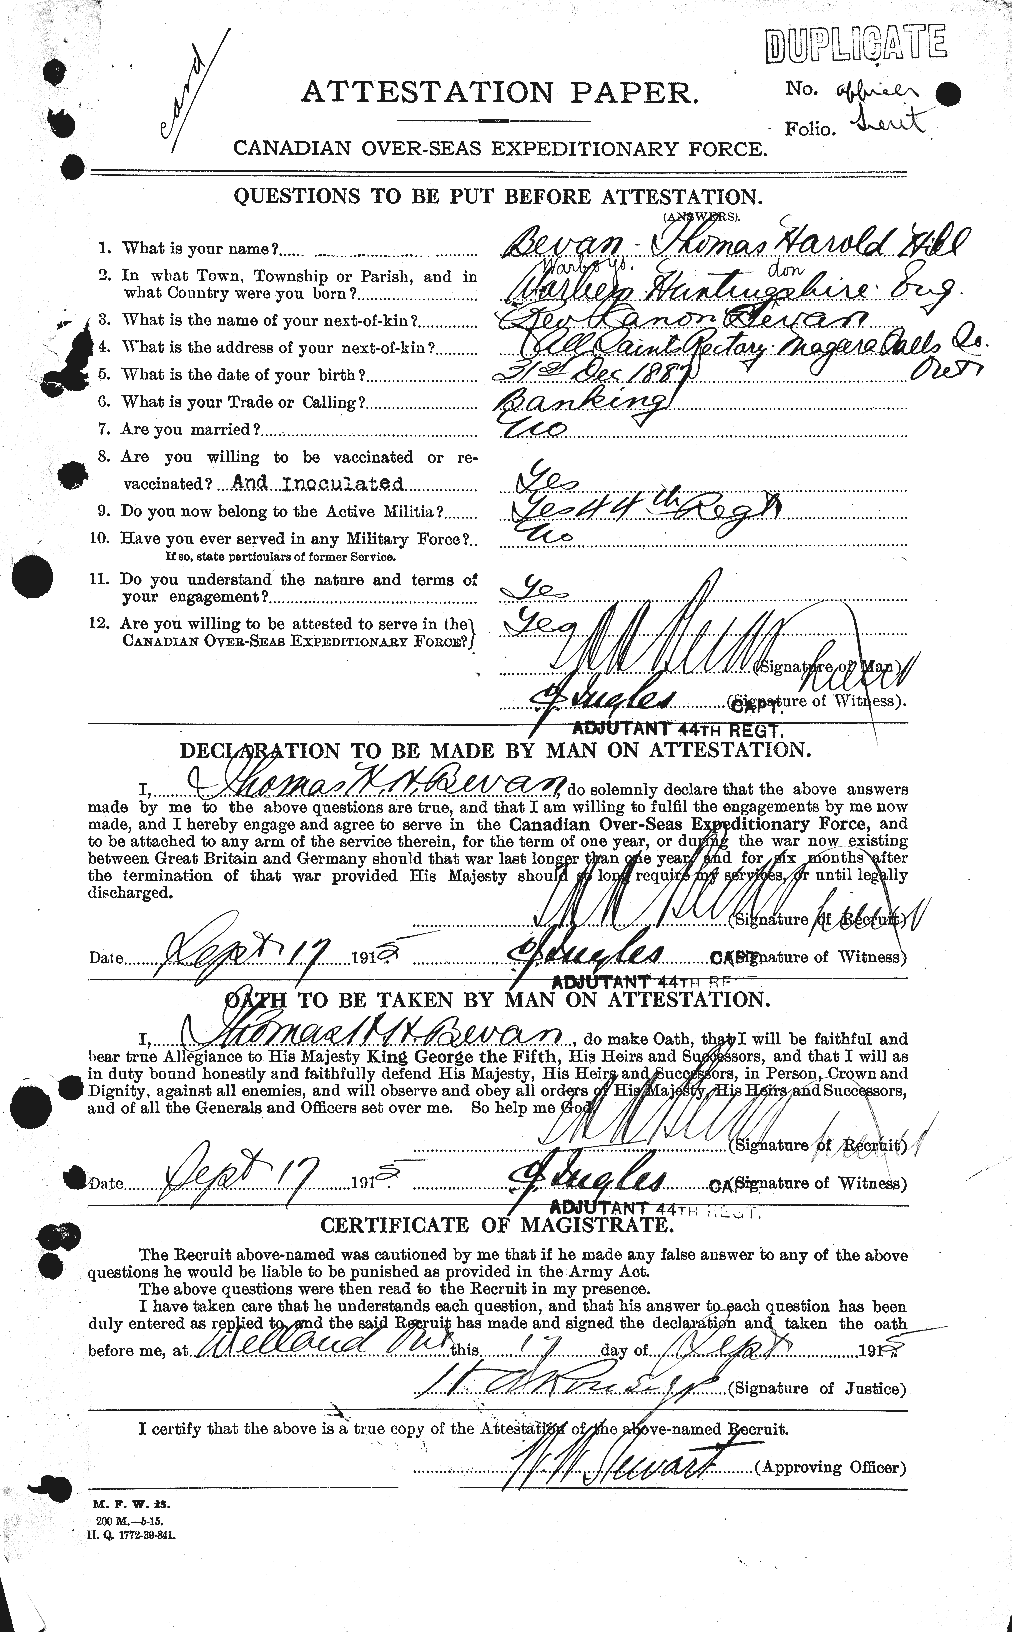 Dossiers du Personnel de la Première Guerre mondiale - CEC 237278a